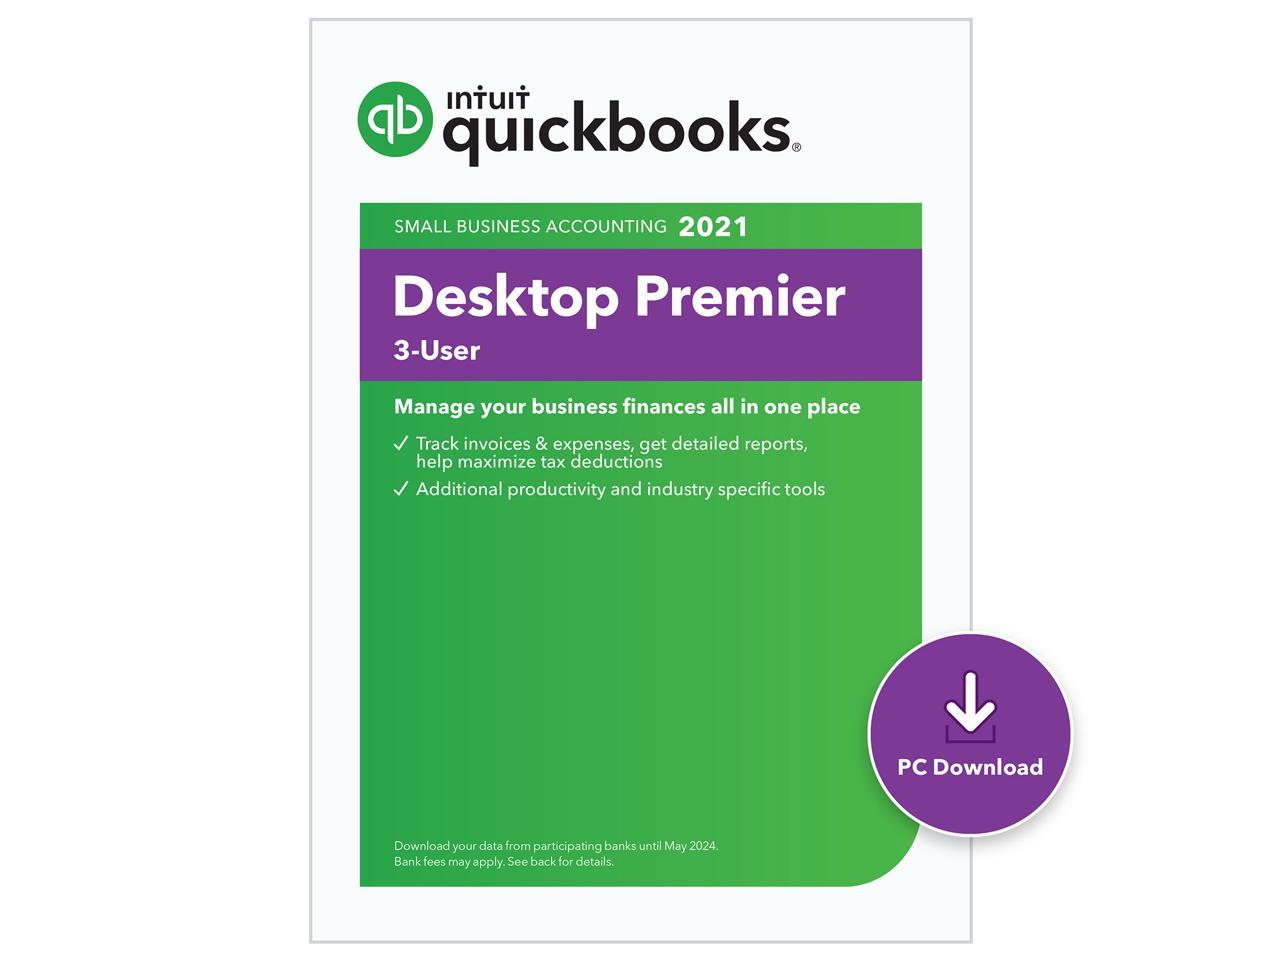 quickbooks desktop 2021 pricing